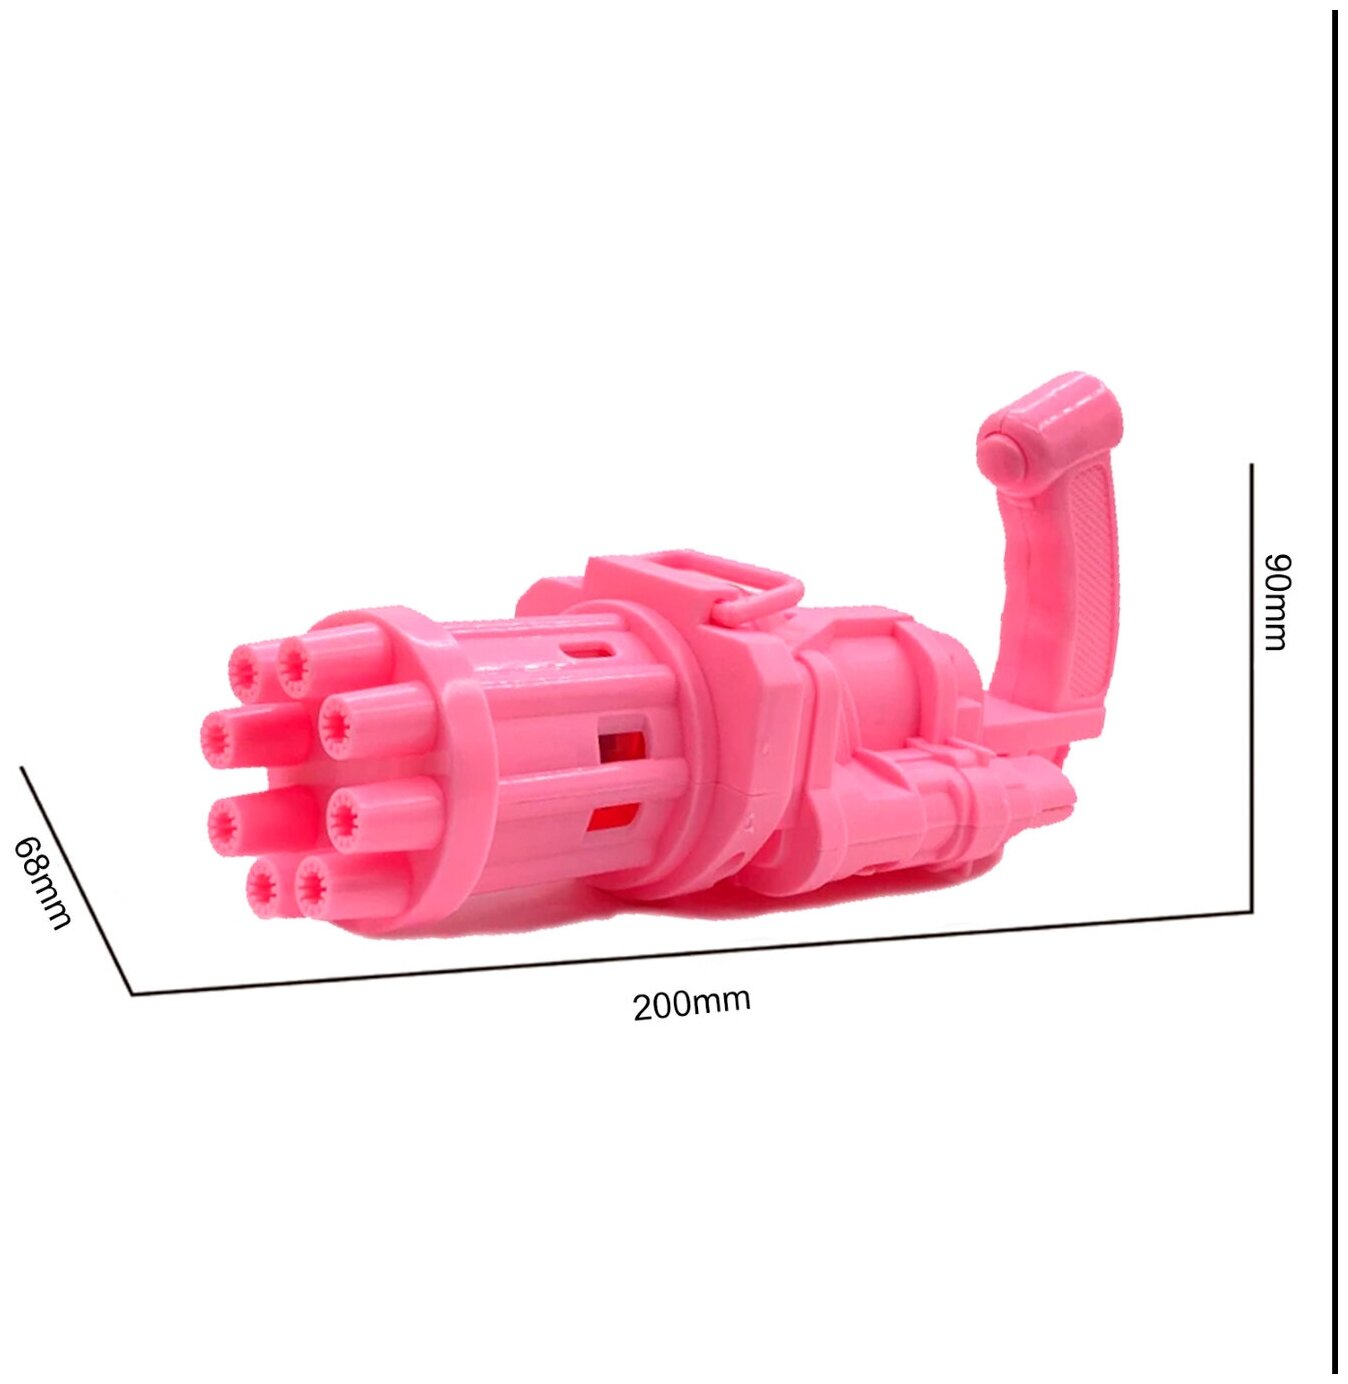 Набор генератор мыльных пузырей "Миниган", розовый / Мыльные пузыри детские Пулемет Гатлинга / Мыльные пузыри пистолет